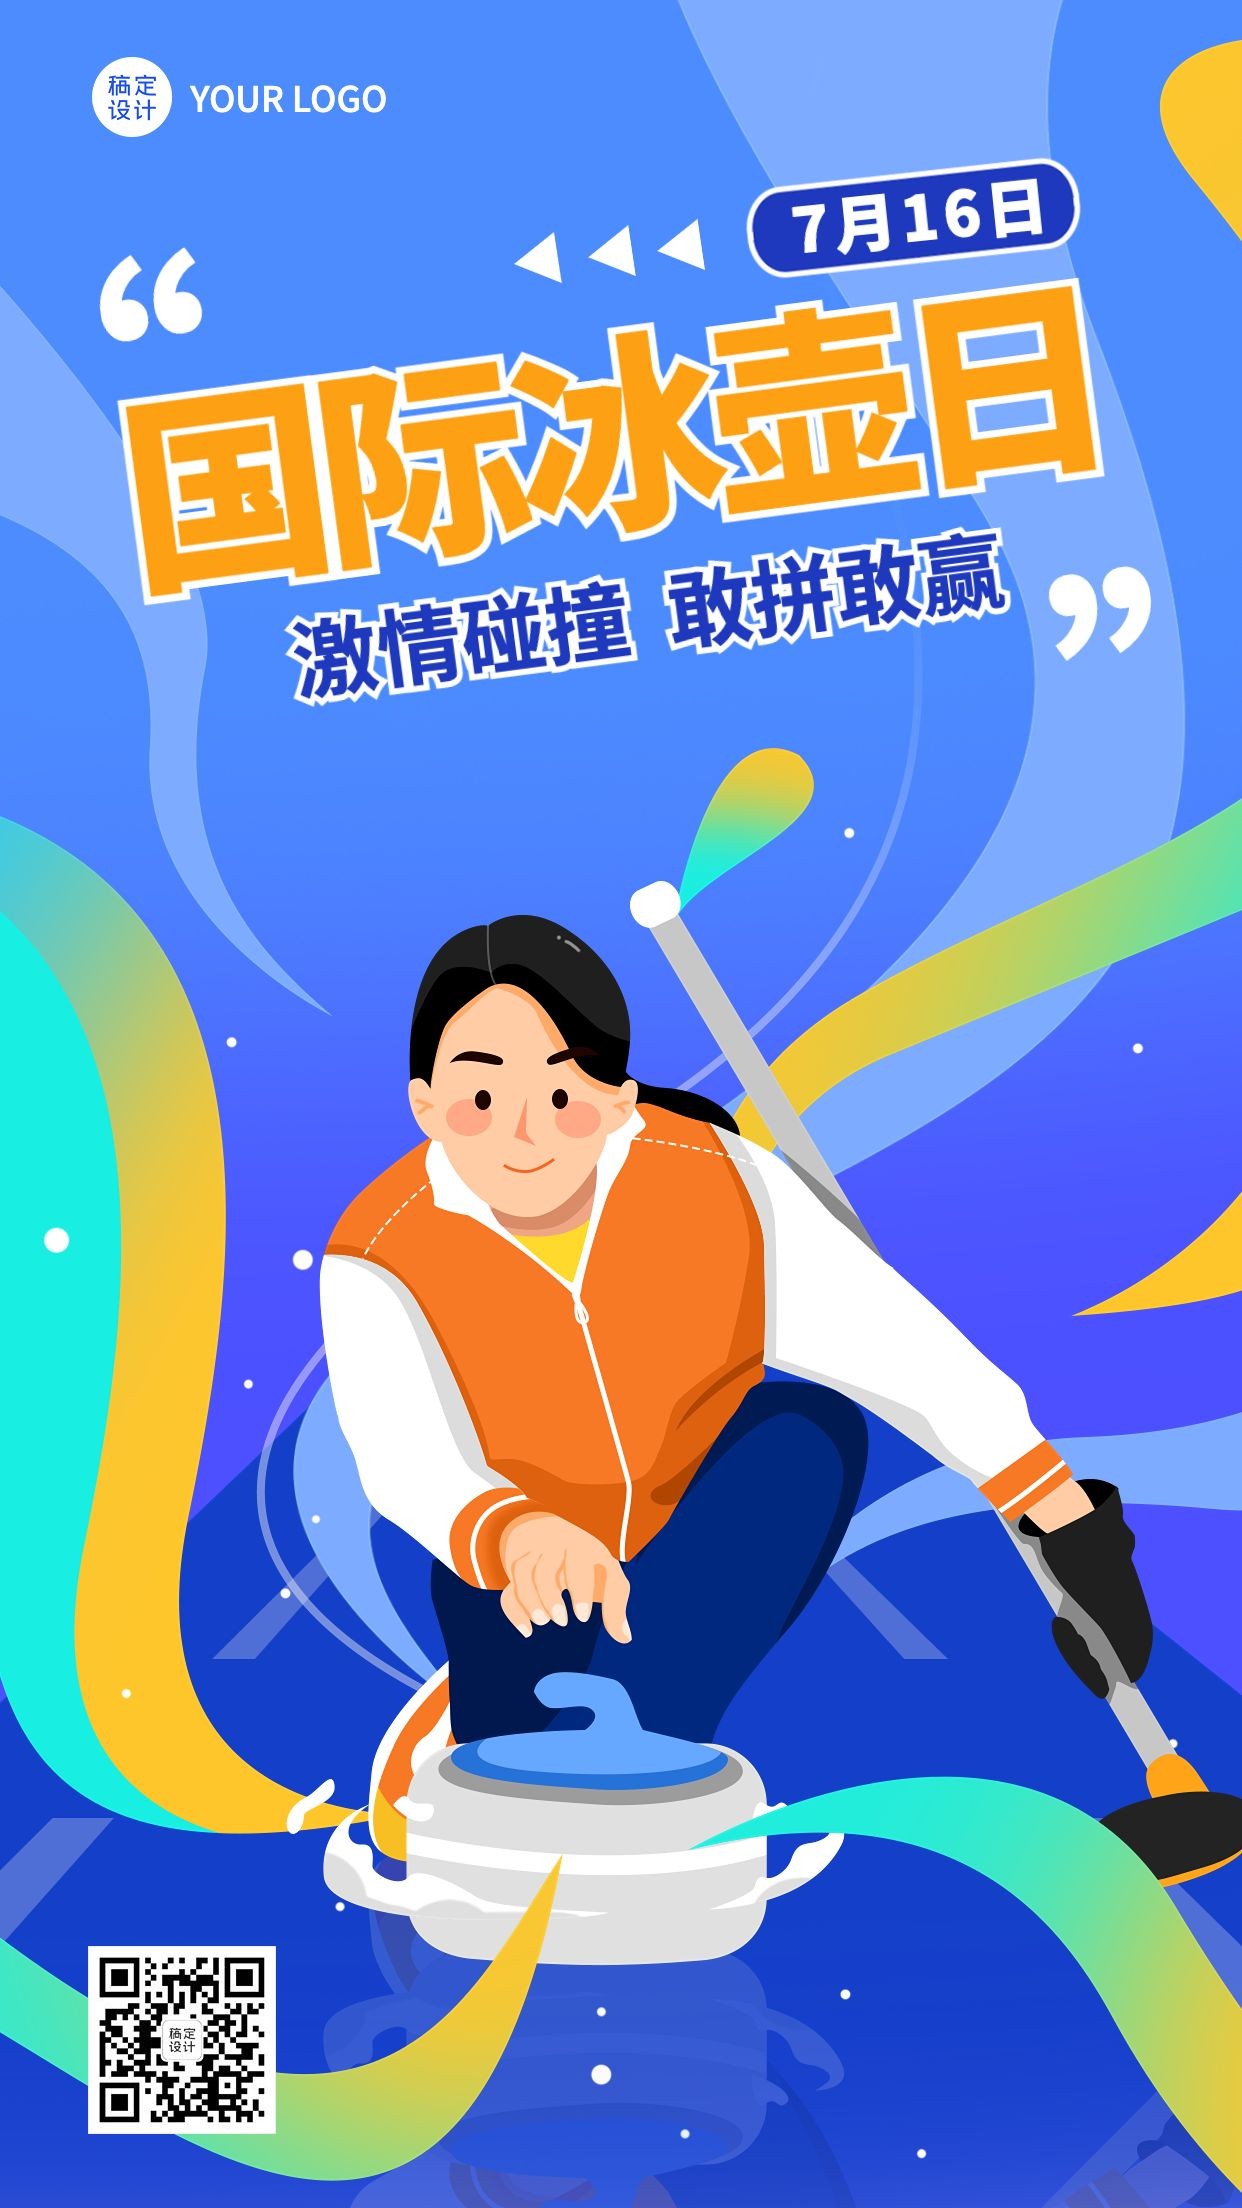 国际冰壶日节日宣传手绘插画手机海报